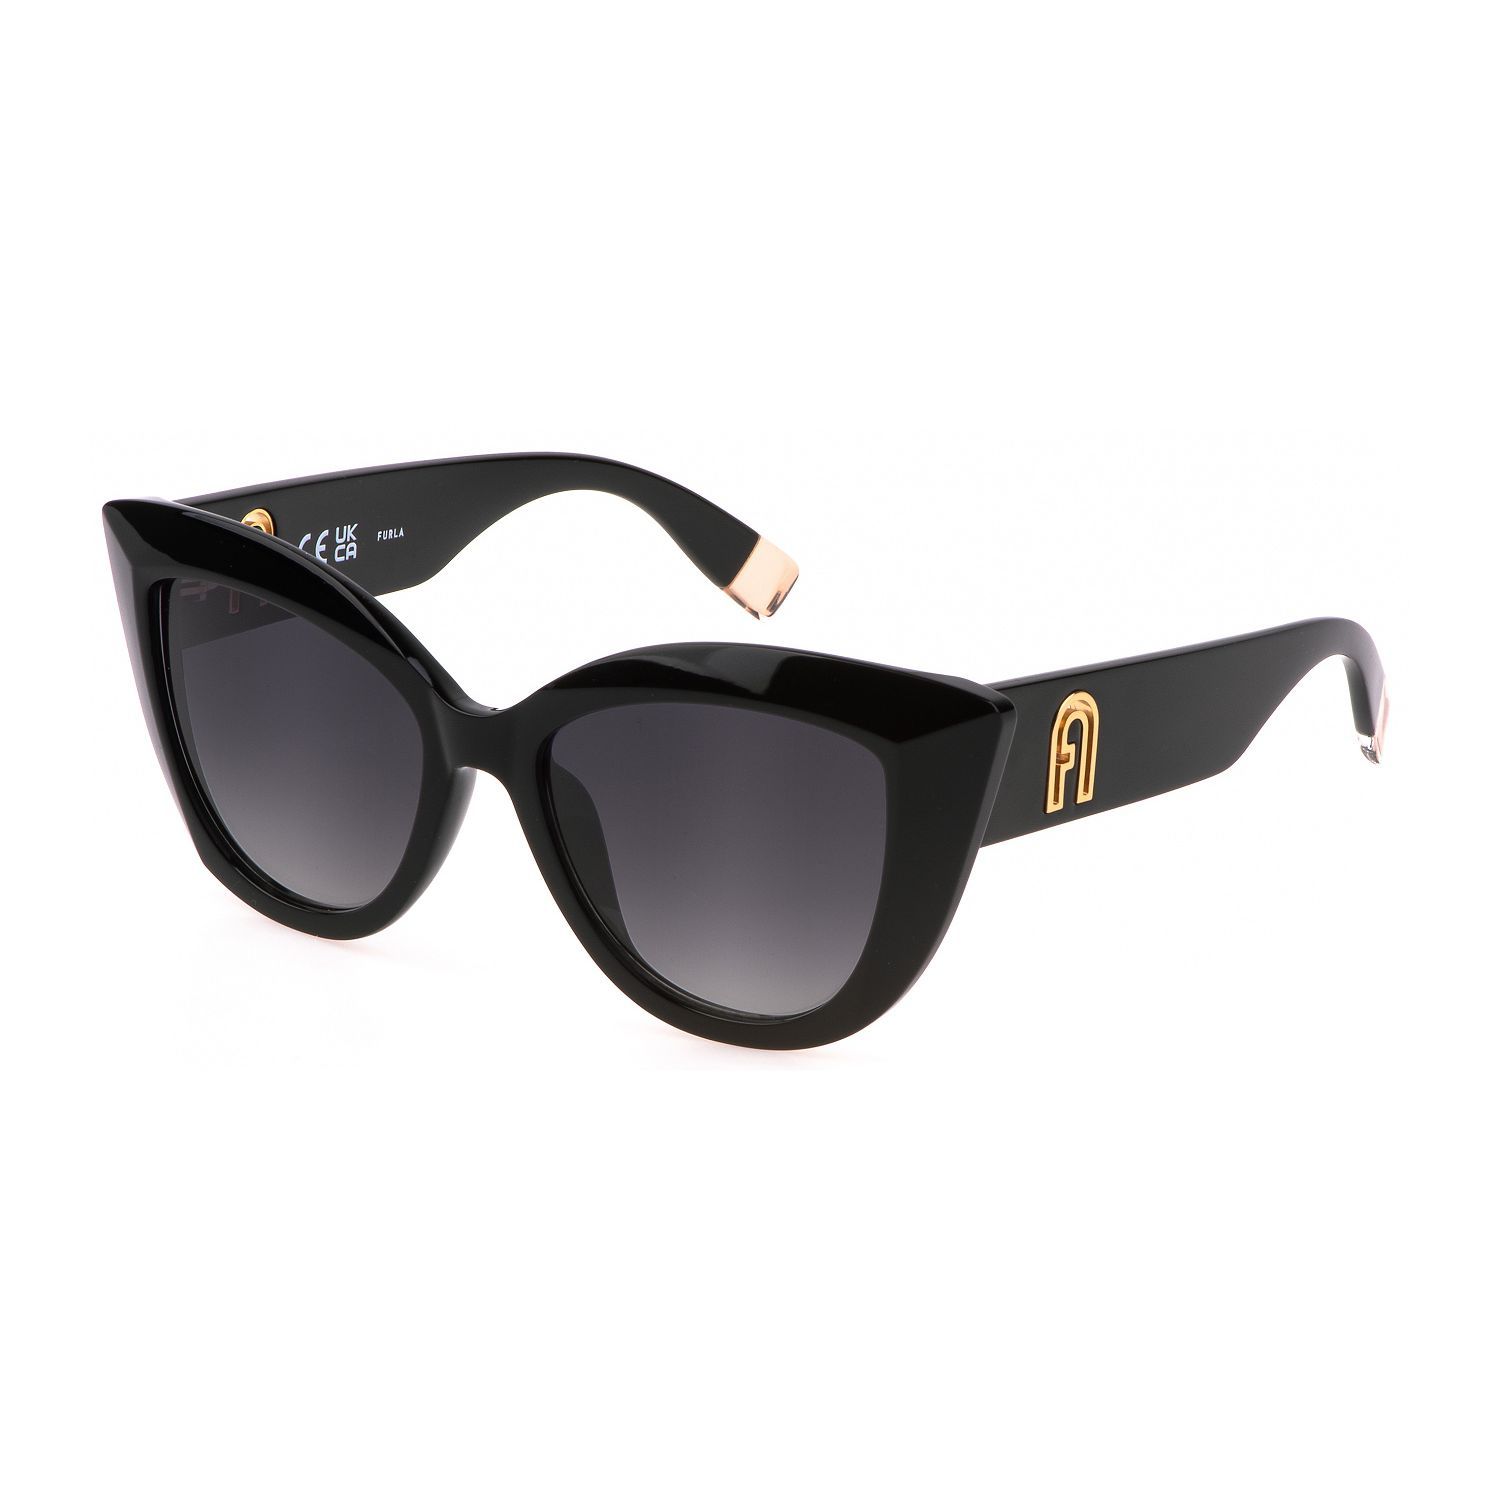 SFU711 Butterfly Sunglasses 0700 - size 53